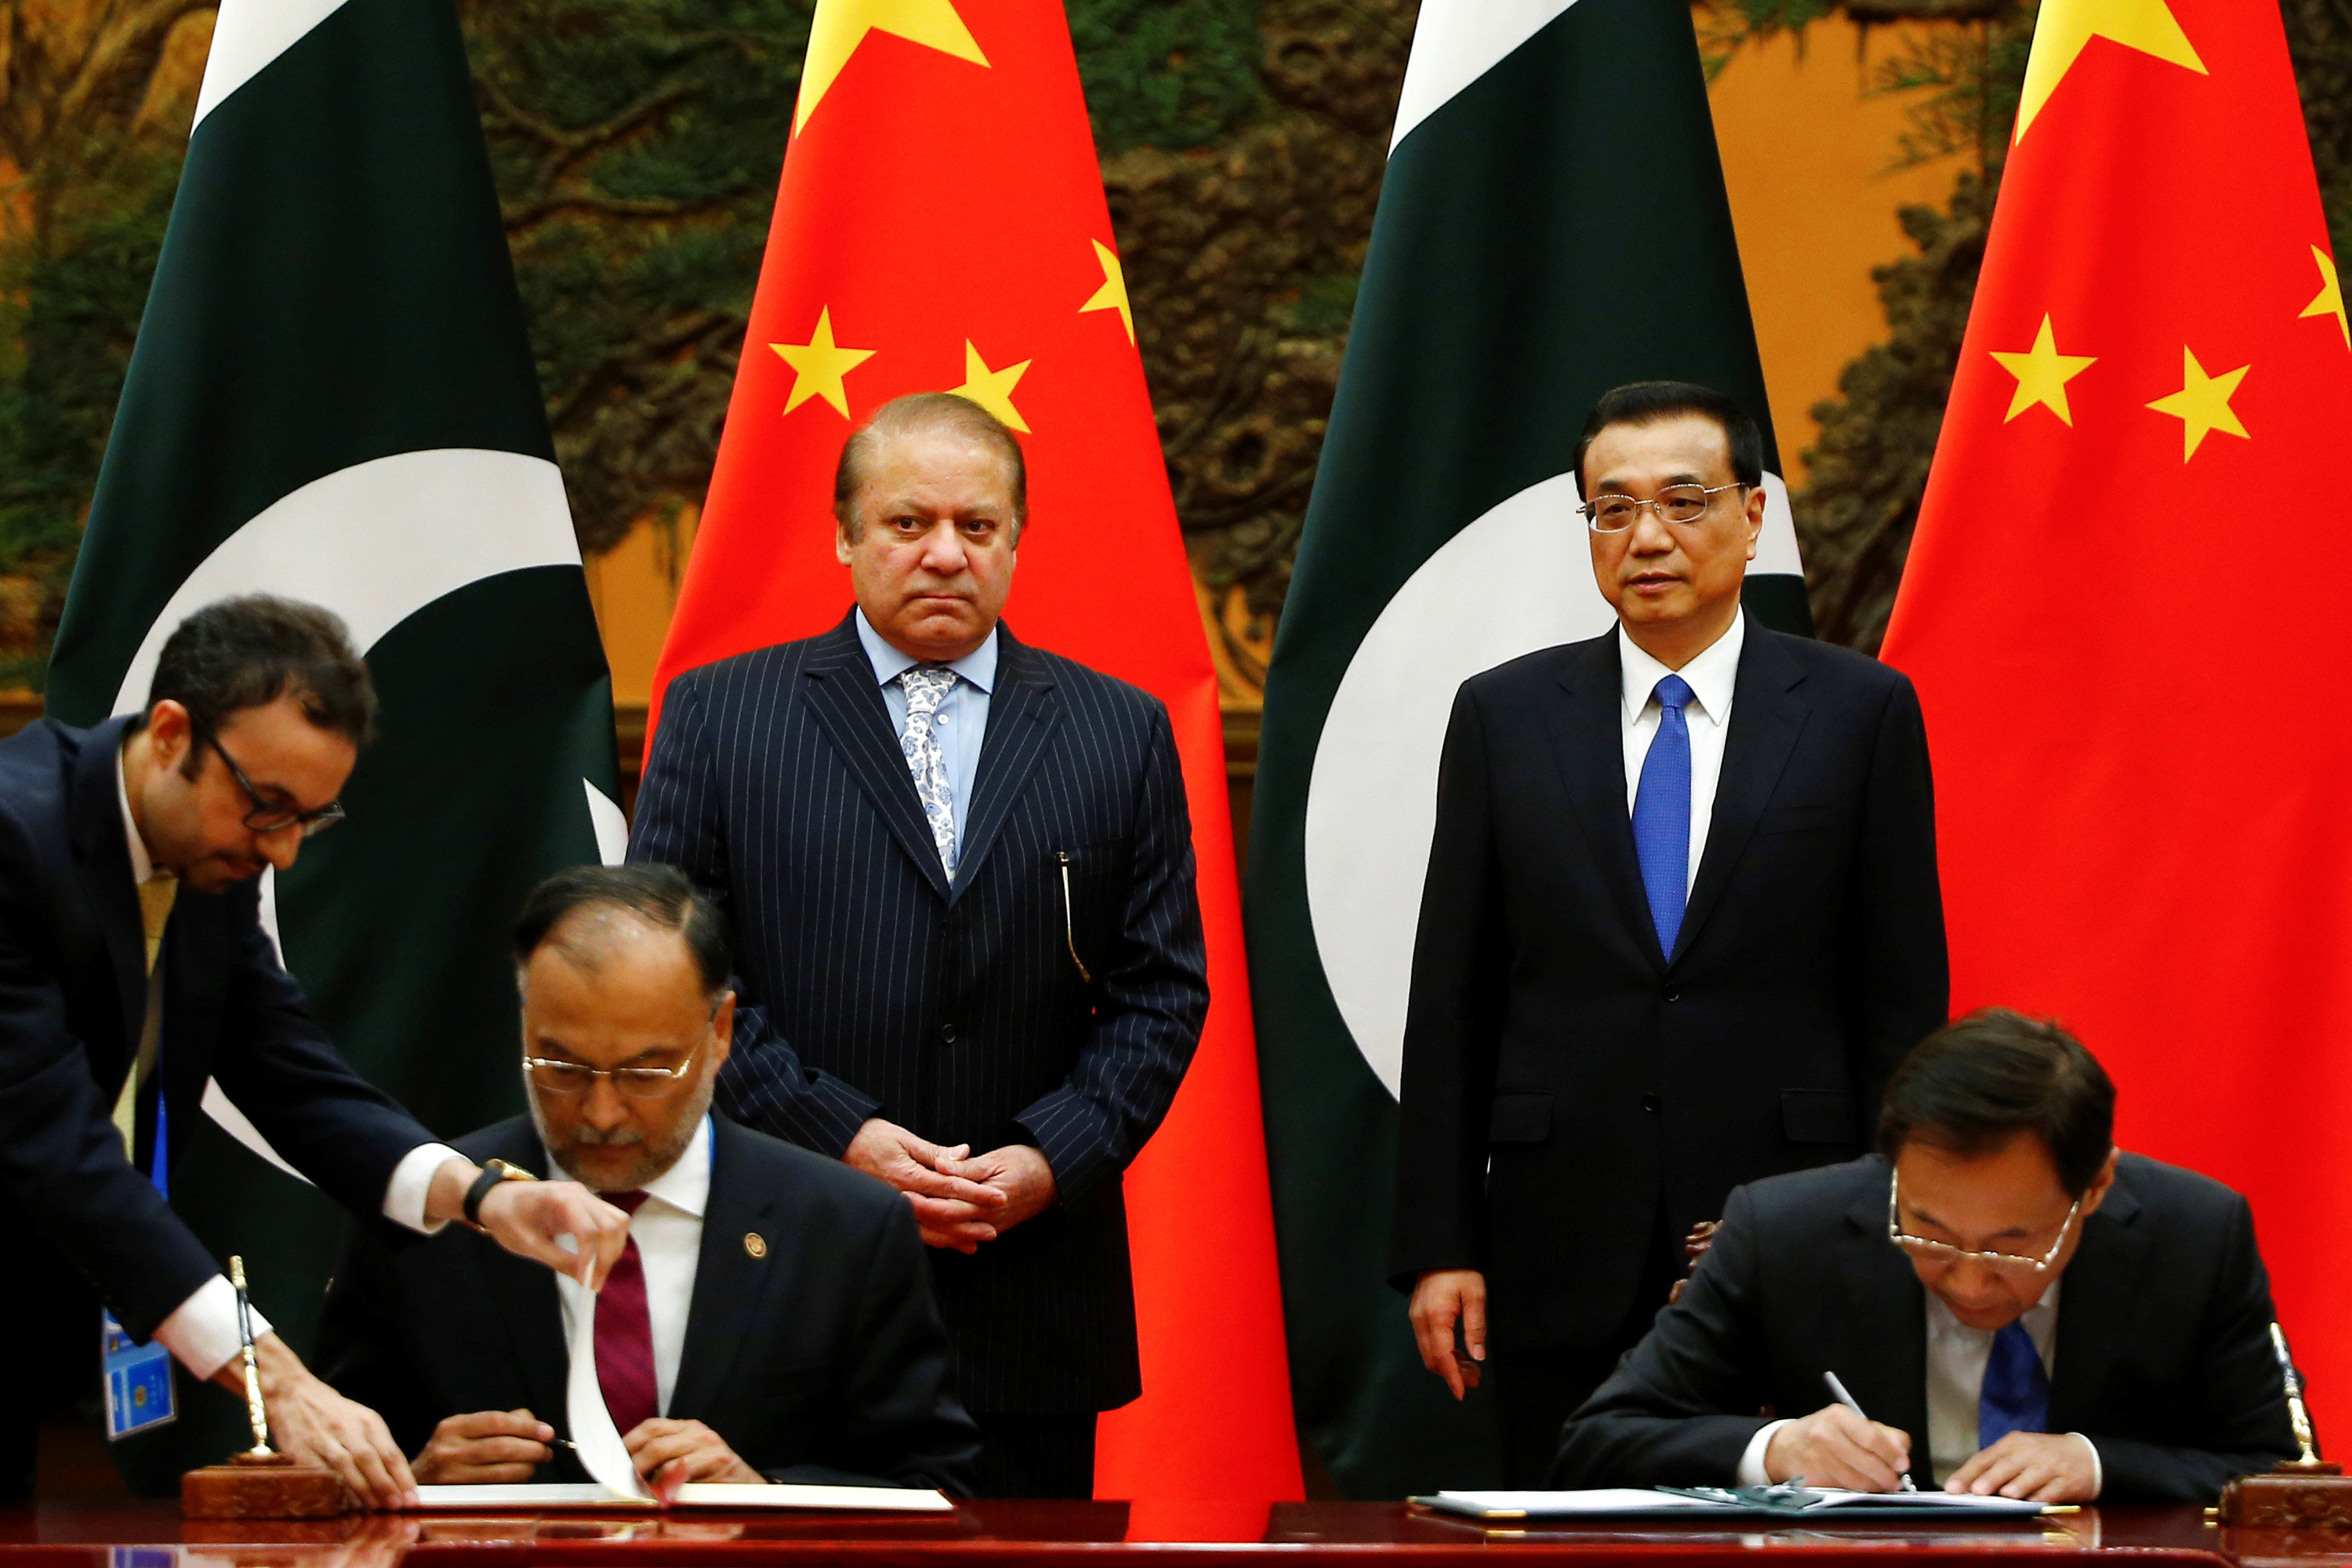 توقيع اتفاقيه صينية باكستانية على هامش الحزام والطريق